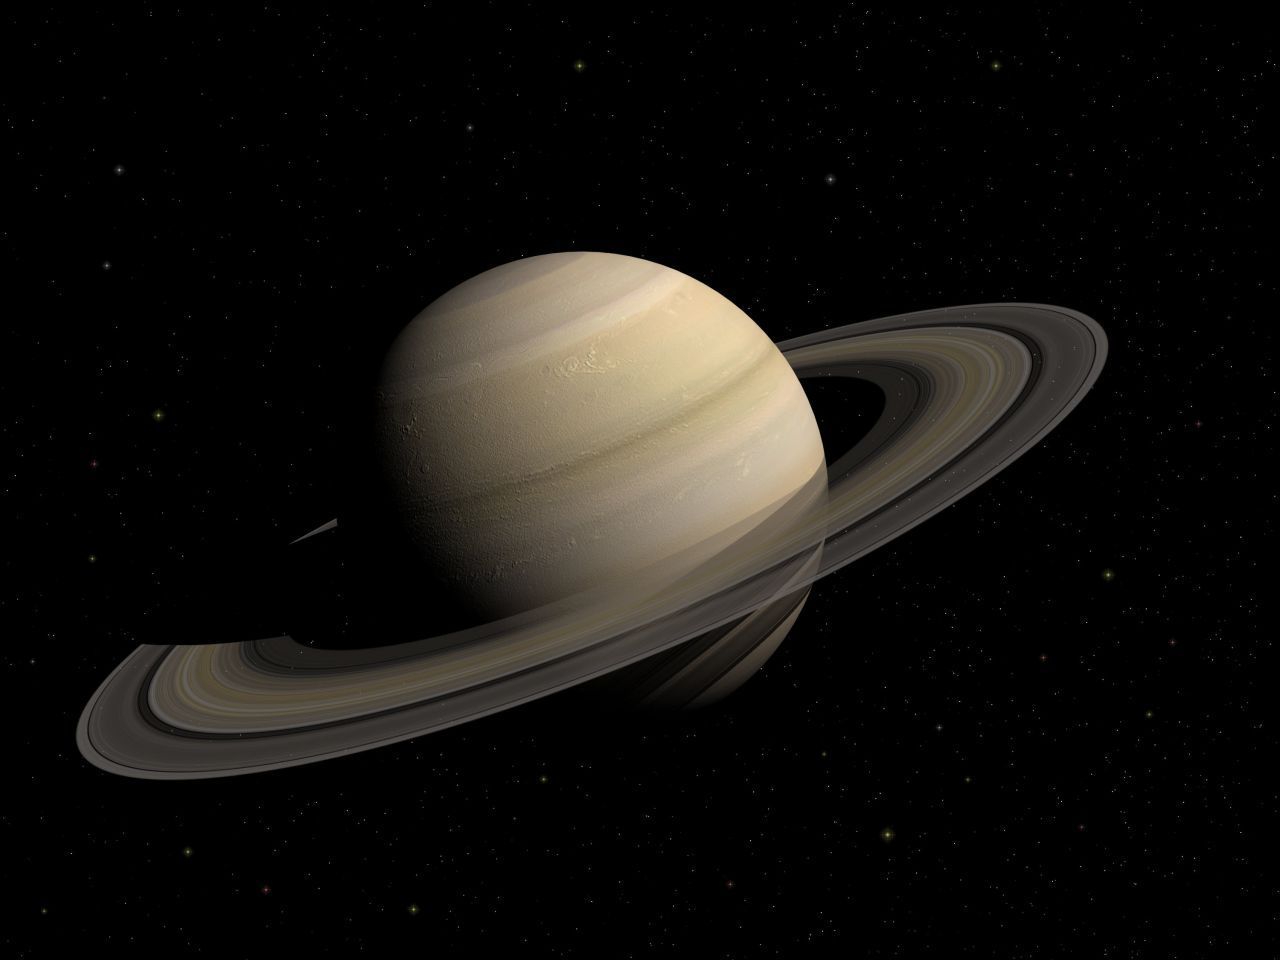 Saturn fällt durch seine majestätischen Ringe und seine Ockerfarbe auf. Er bewegt sich nur sehr langsam - für einen Sonnenumlauf braucht er rund 30 Erdjahre! Deshalb benannten ihn die Römer nach dem Vater von Jupiter, dem Gott Saturn. Er ist der Gott der Landwirtschaft. 